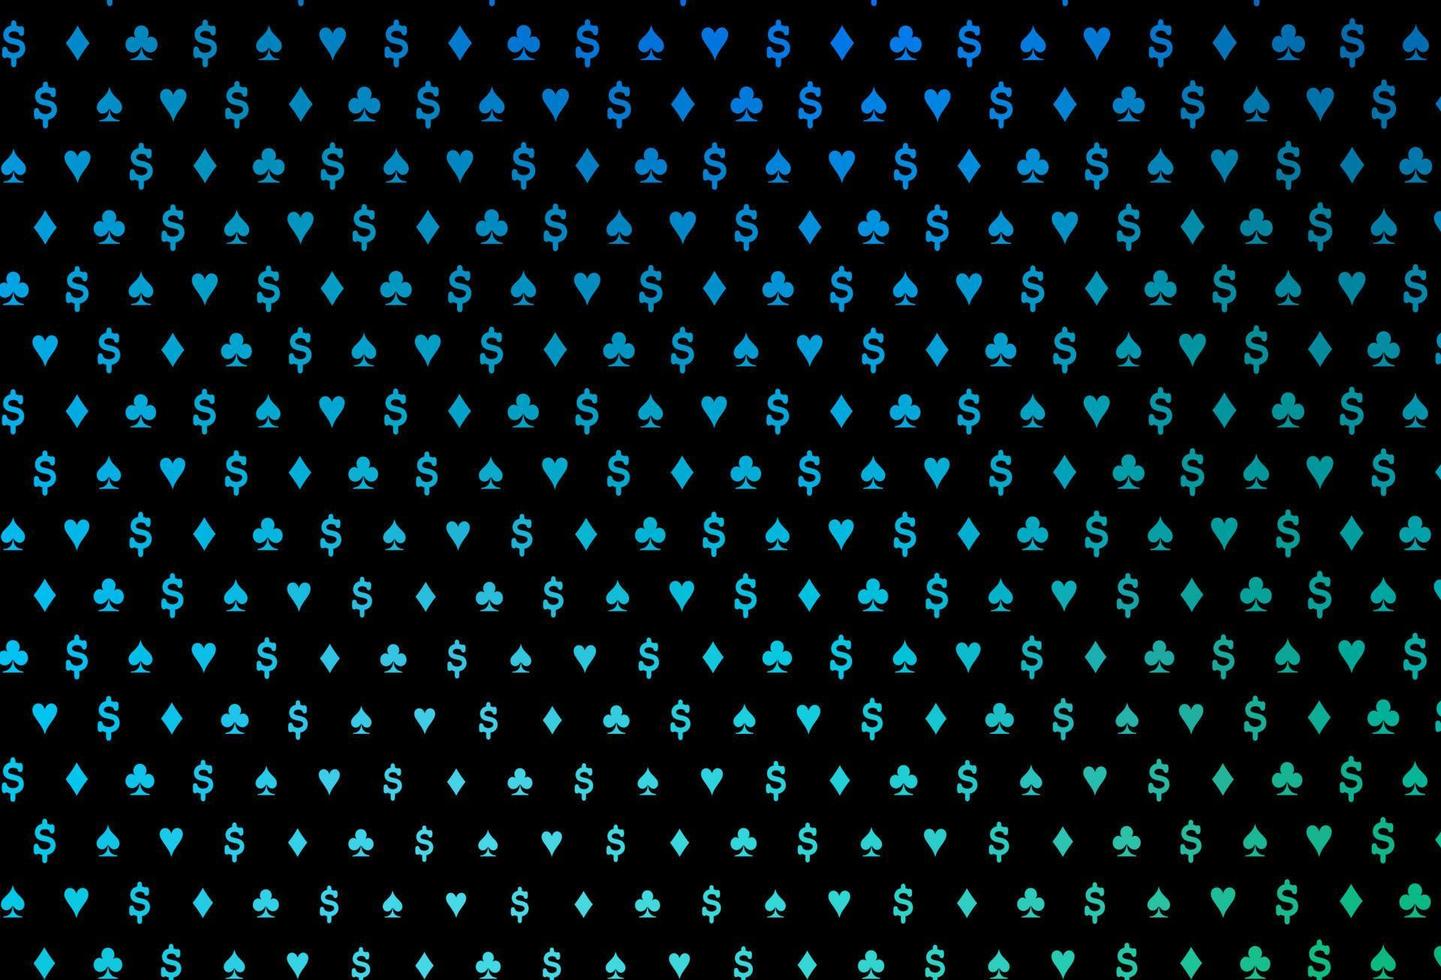 patrón de vector azul oscuro, verde con símbolo de tarjetas.